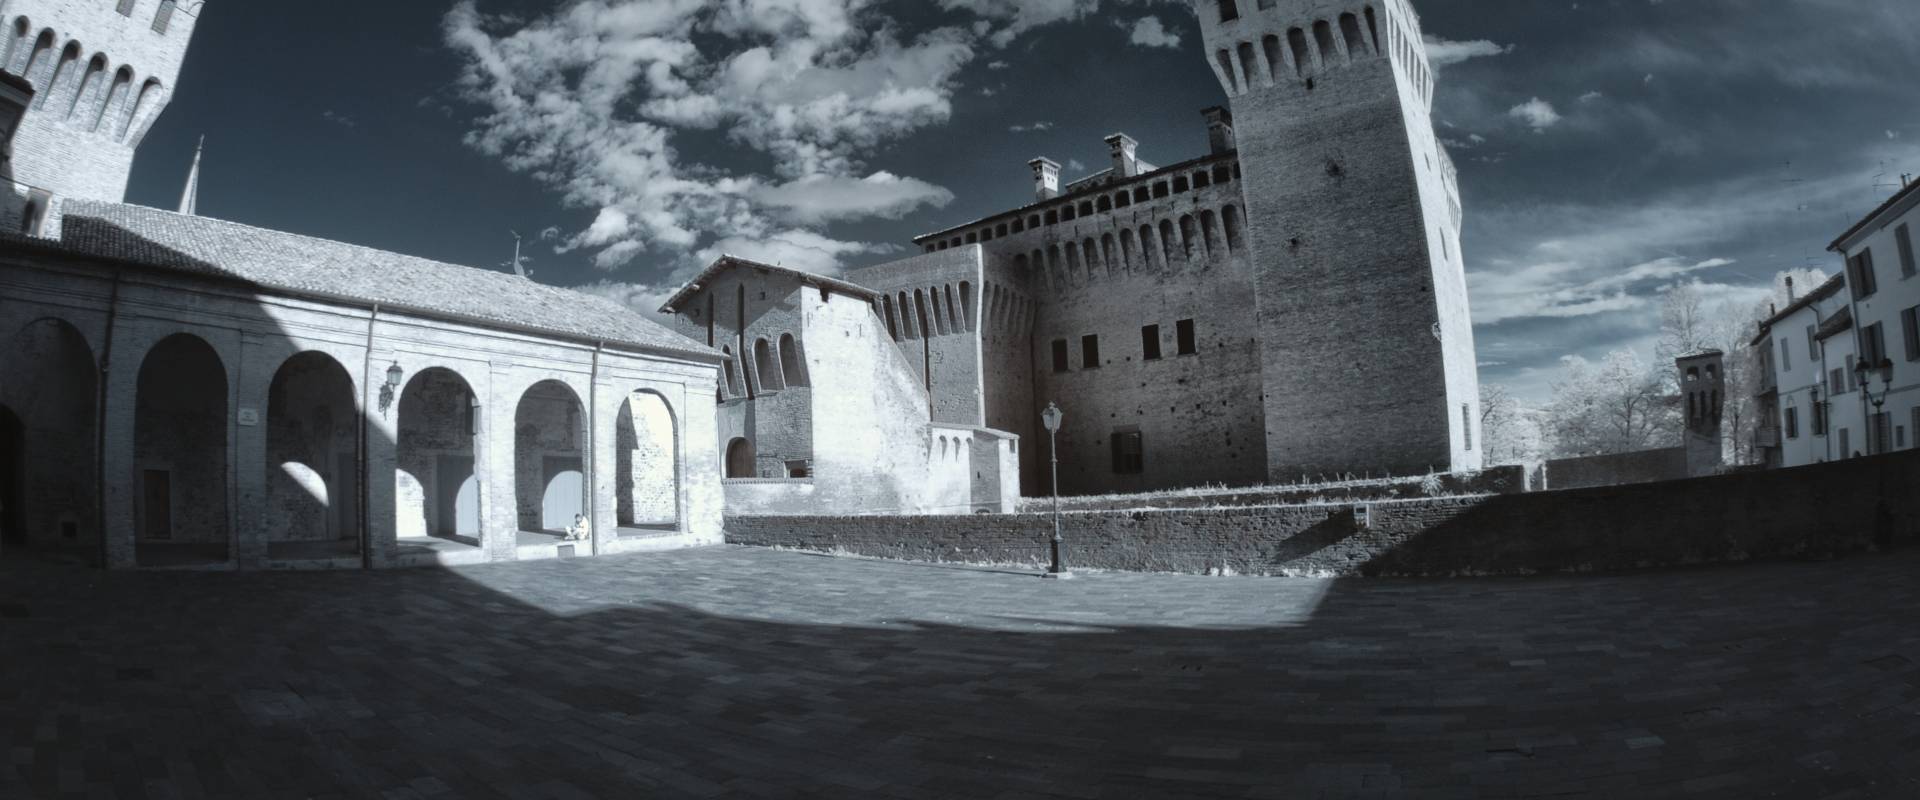 Castello di Vignola - Infrarosso 720nm photo by Quart1984